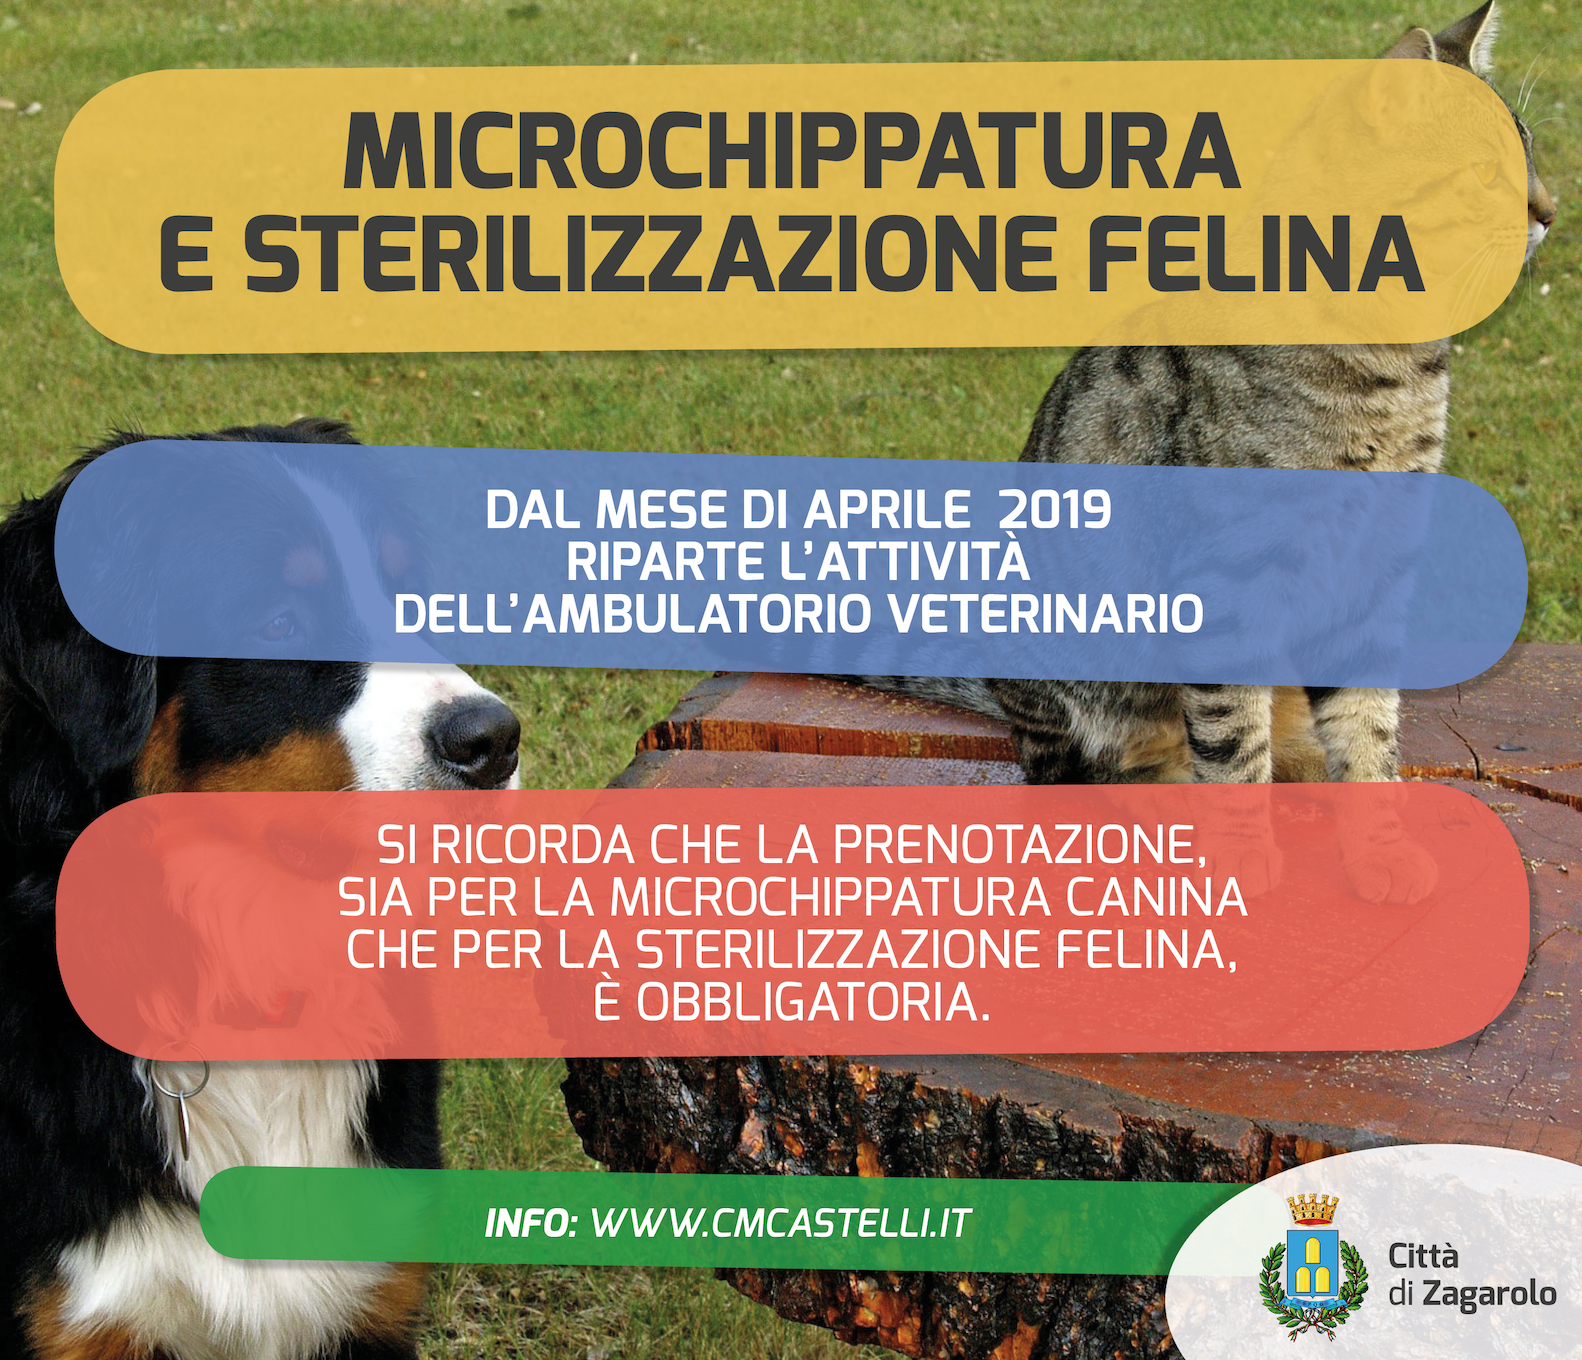 Microchippatura canina e sterilizzazione felina